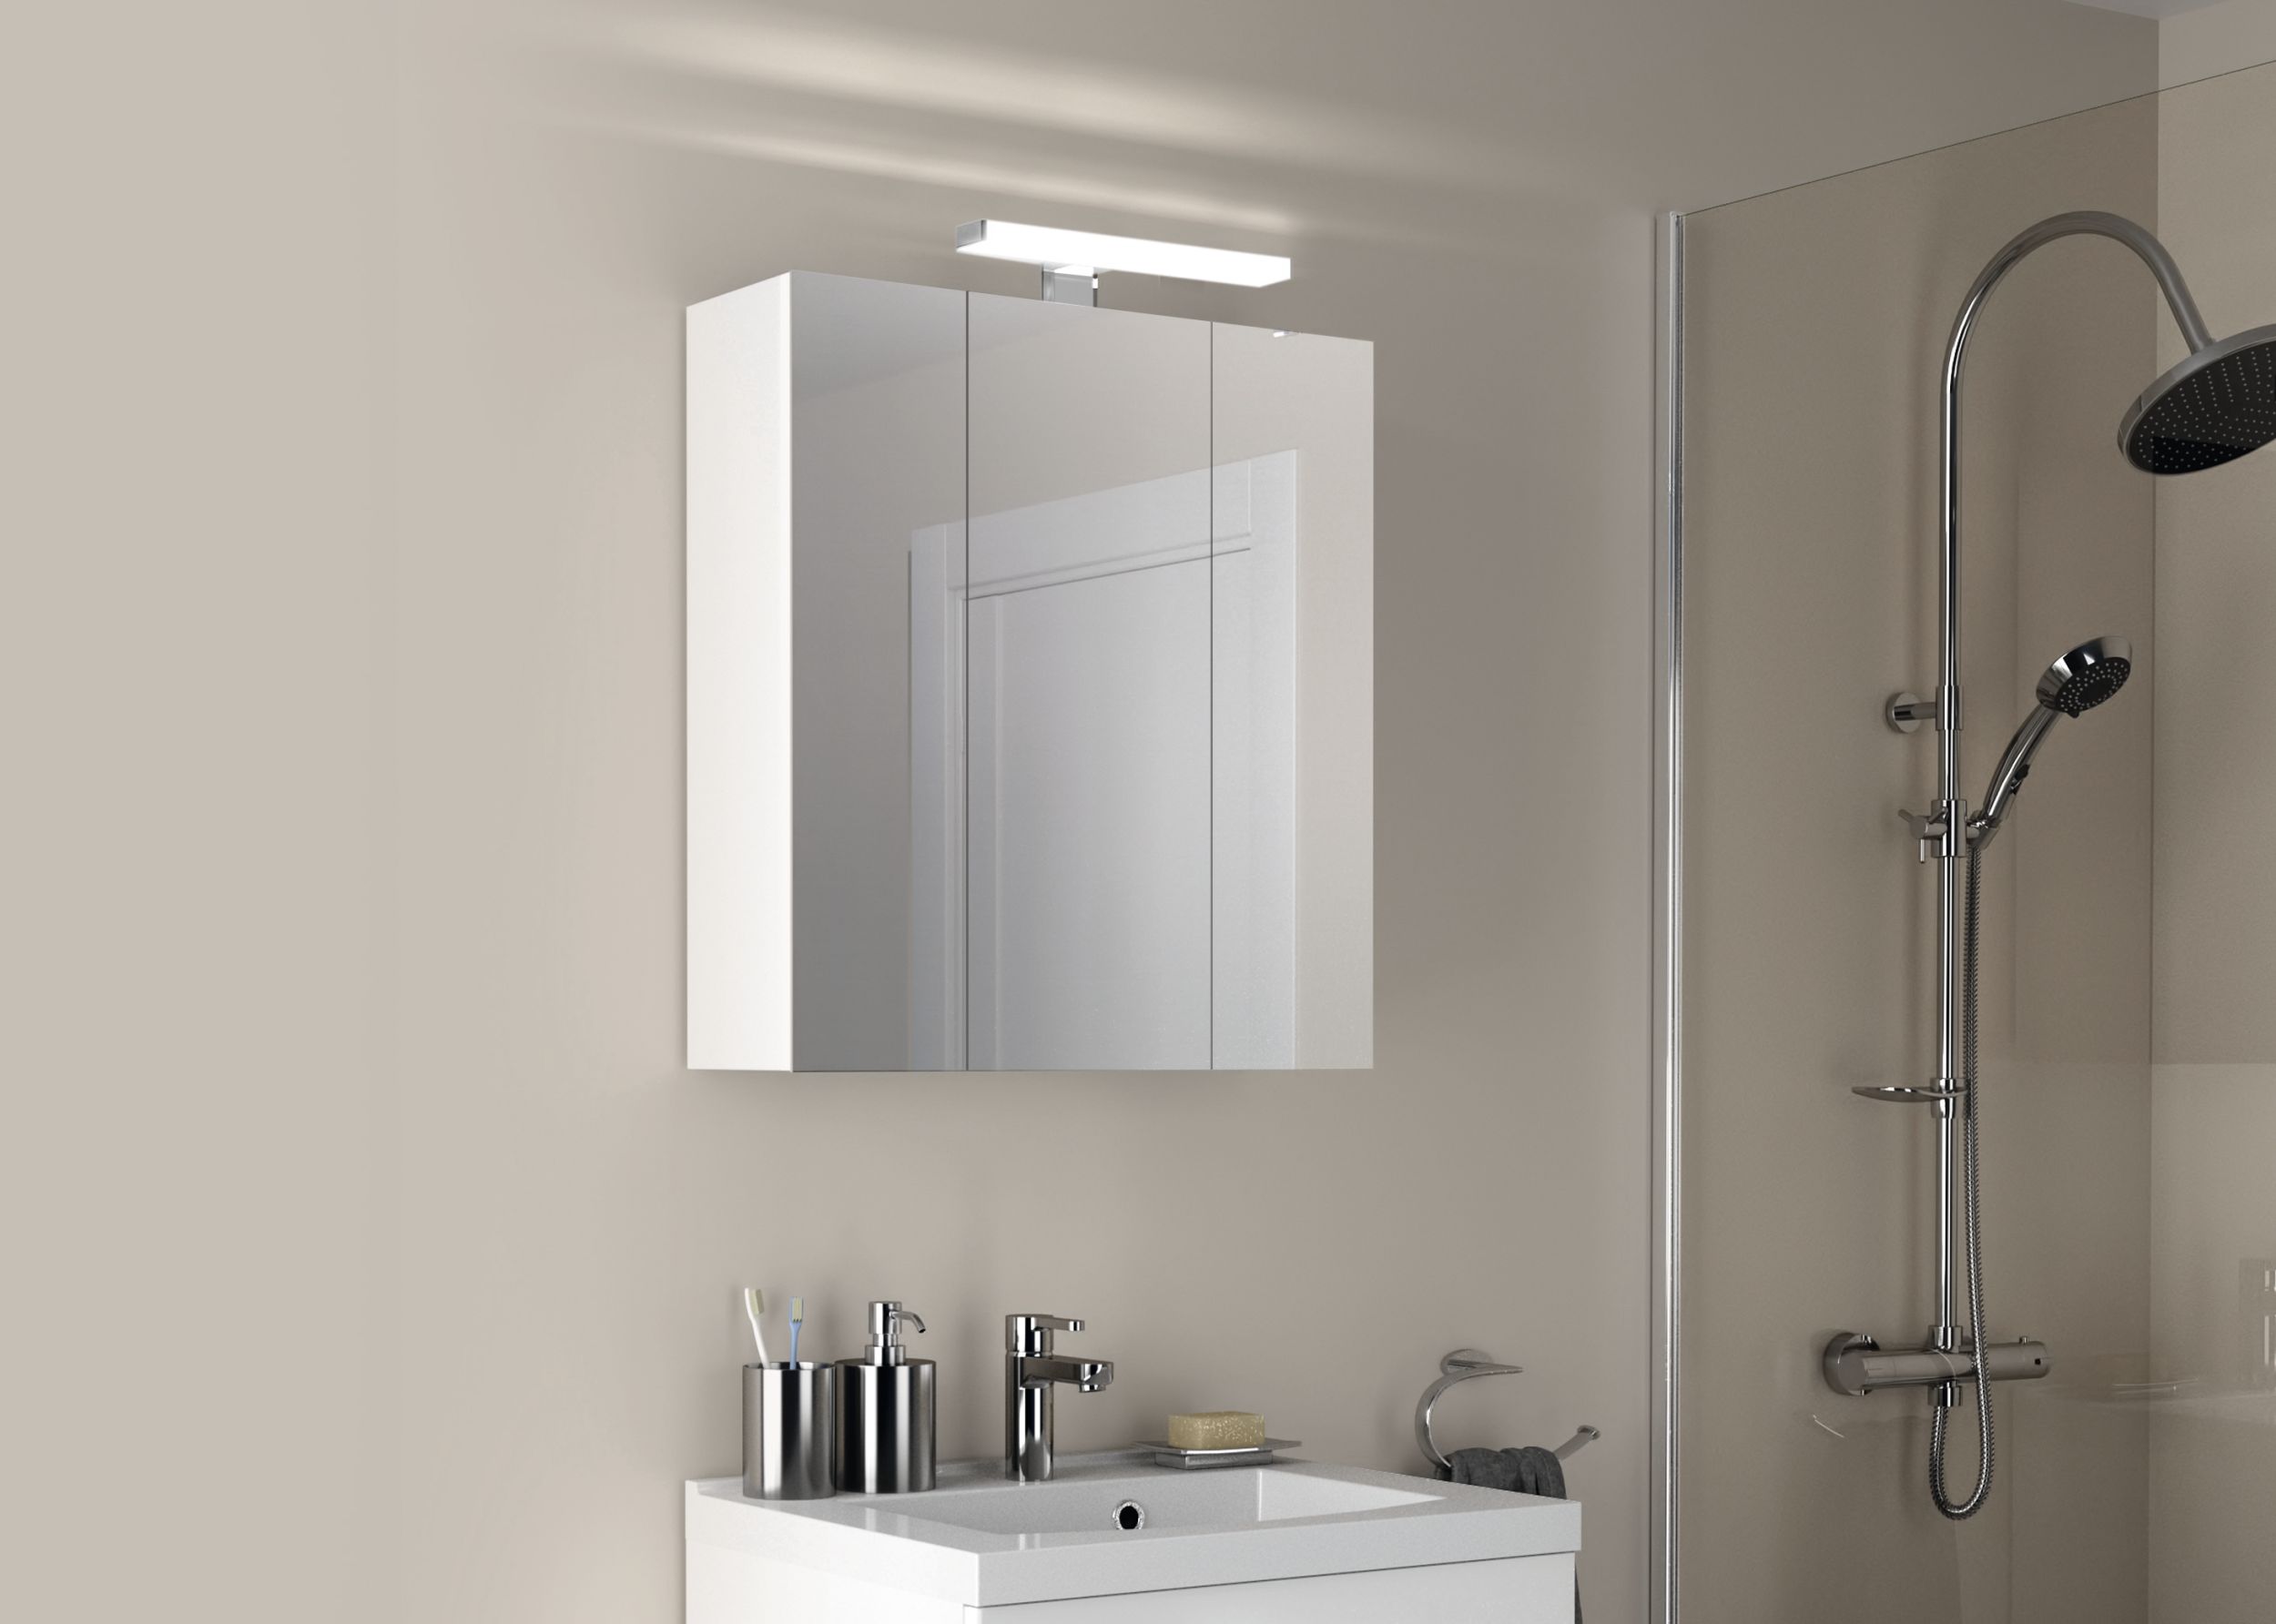  Illuminated bathroom cabinet 80 cm